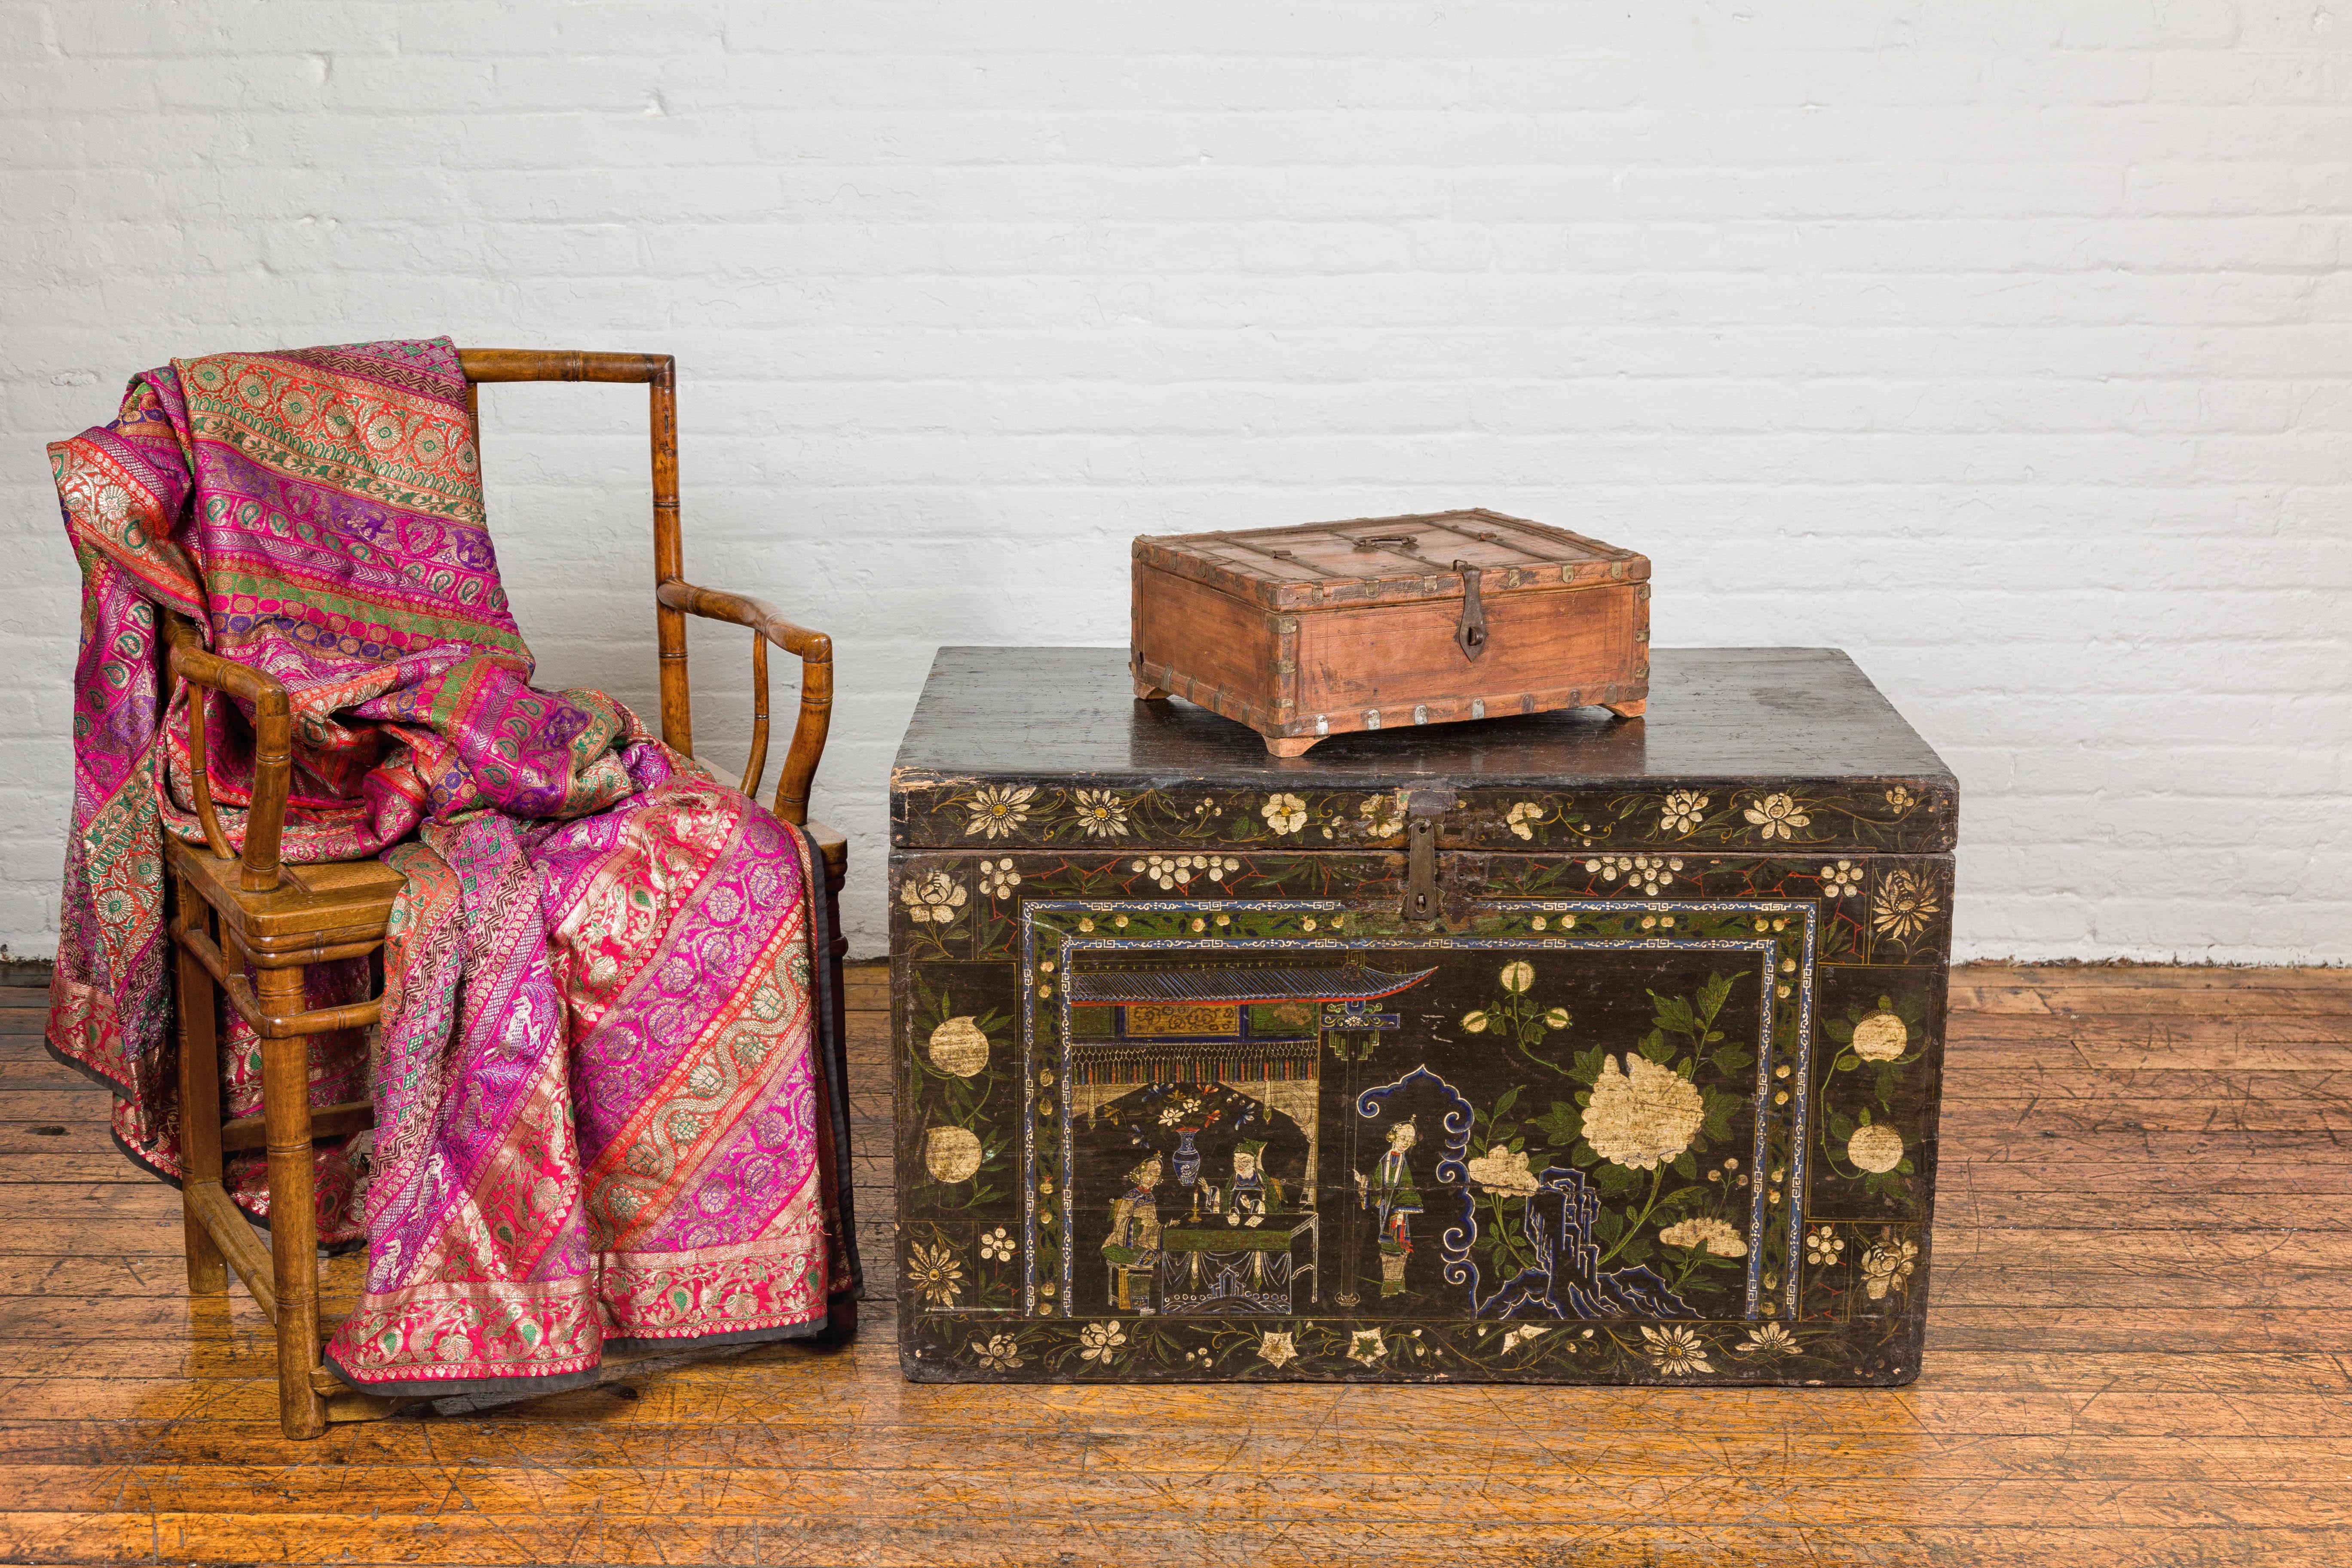 Rustikale Dokumentenbox aus indischem Holz aus dem 19. Jahrhundert mit Messingdetails, teilweise zu öffnender Oberseite und zierlichen Klammerfüßen. Diese rustikale indische Holzschatulle aus dem 19. Jahrhundert strahlt eine Aura von historischem